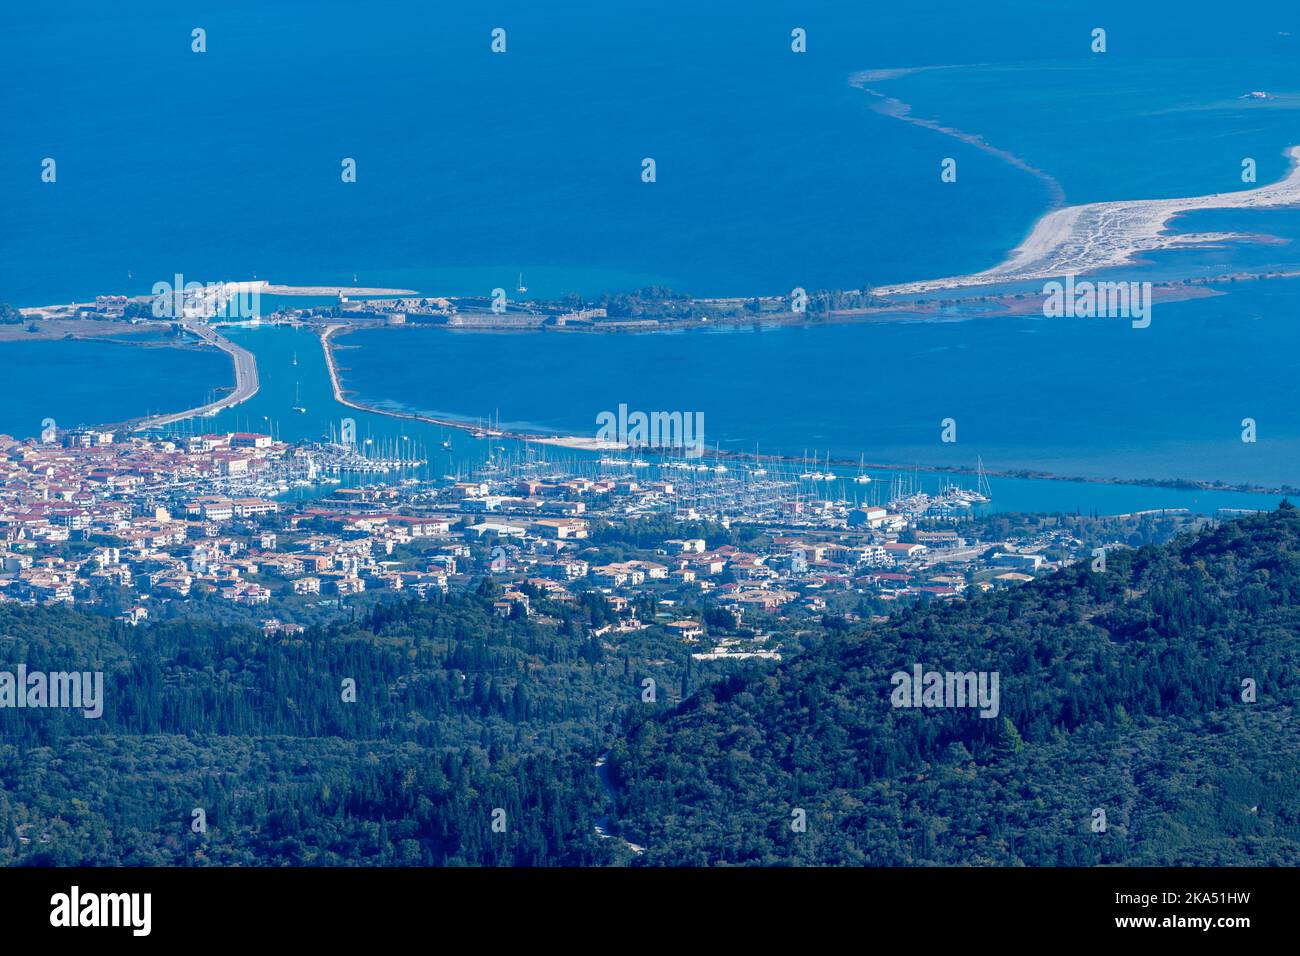 Una vista dalla cima di una montagna dell'isola di Lefkada, Grecia, che mostra la capitale e il collegamento della strada sopraelevata con la terraferma. Foto Stock